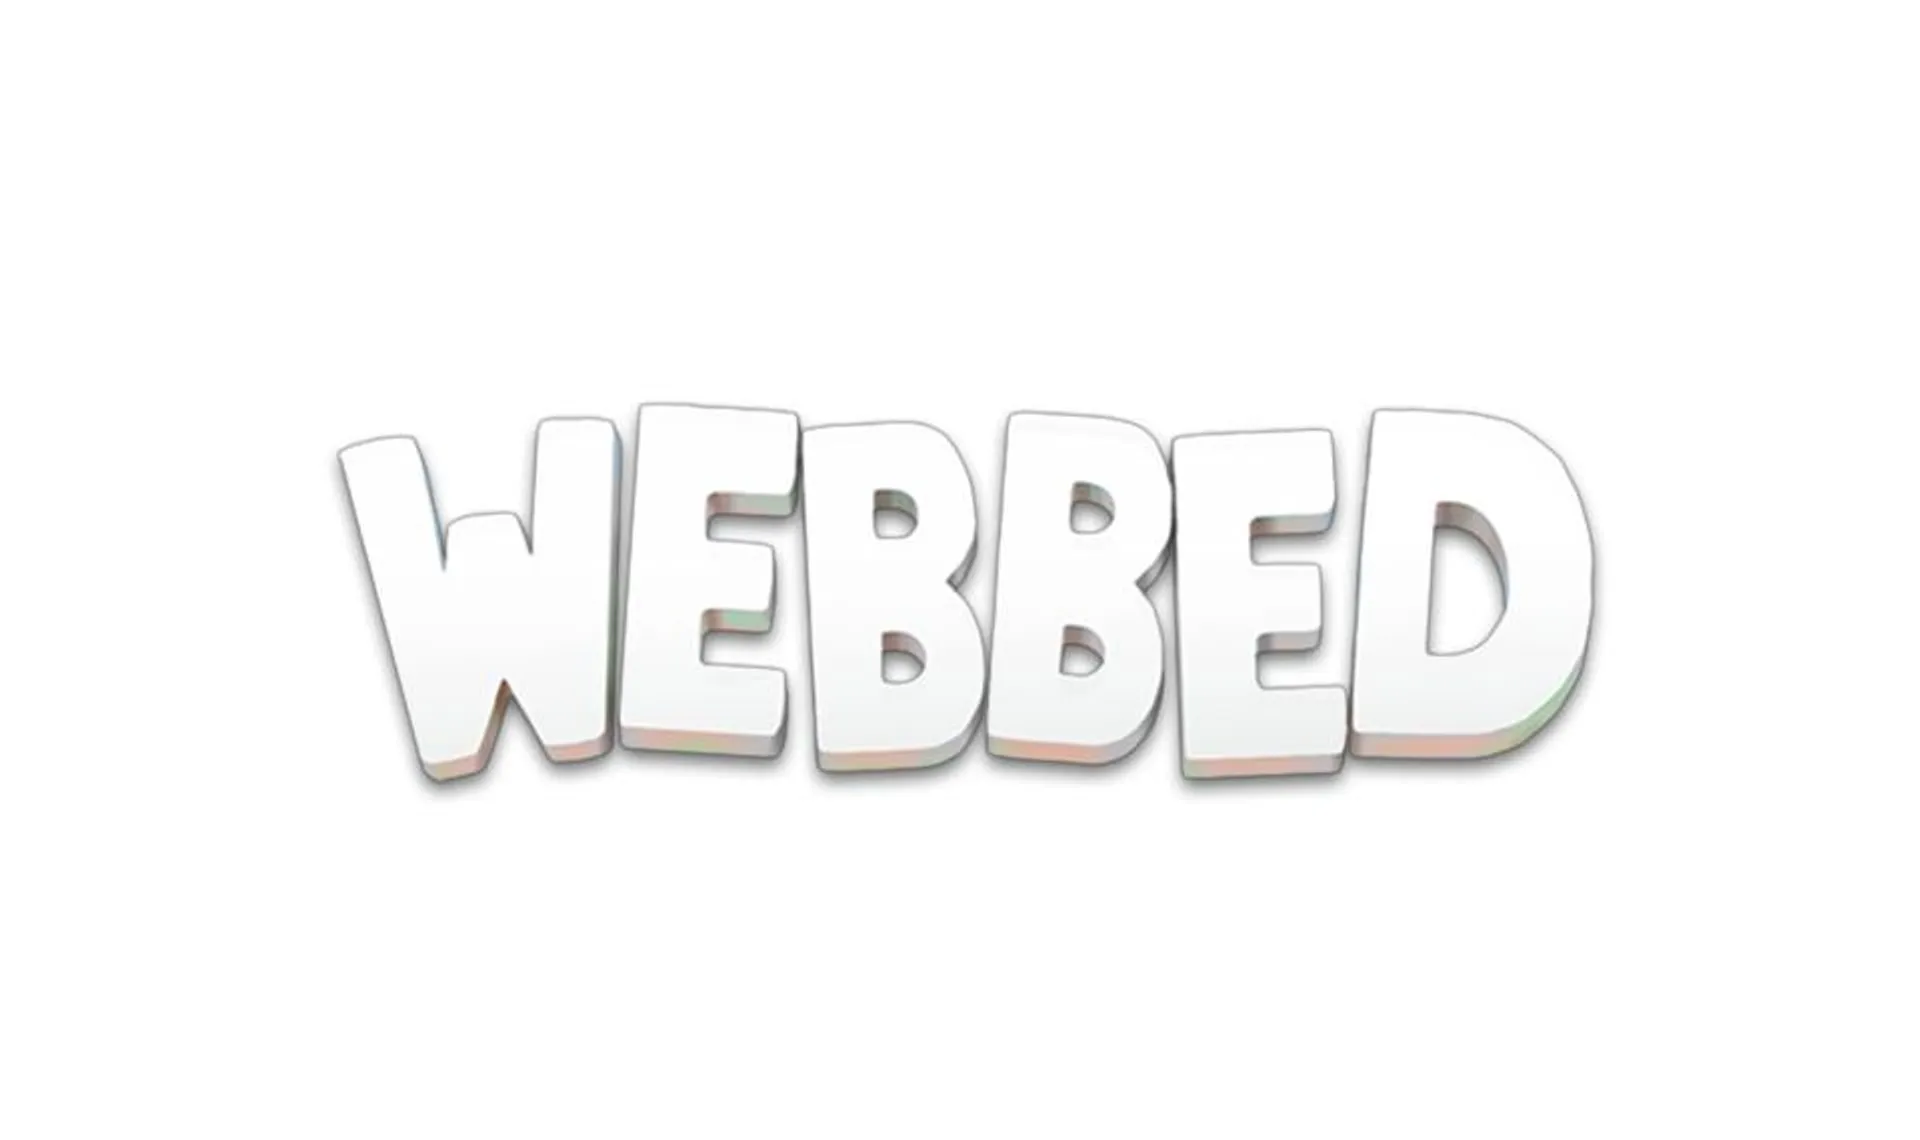 Webbed